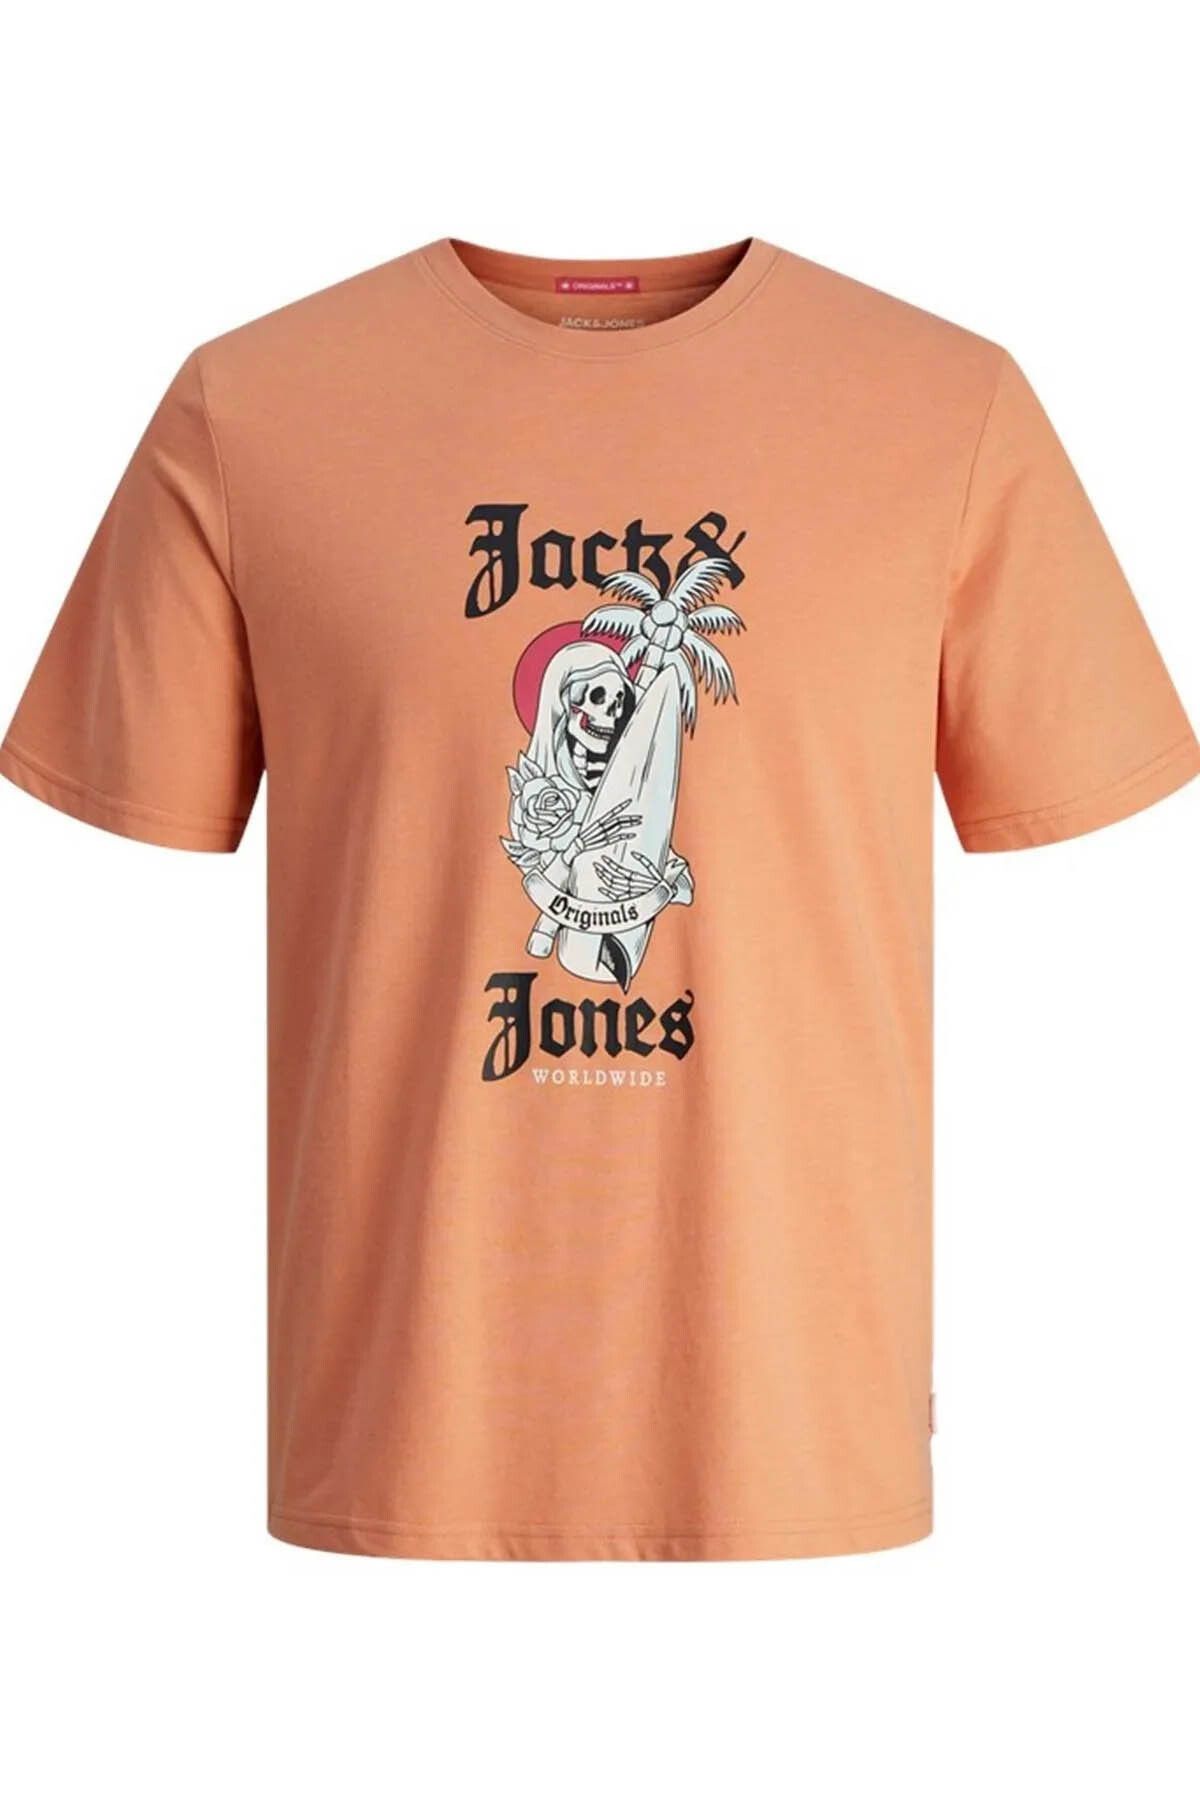 Jack & Jones Erkek T-shirt Somon 12255192 Jorcoconut Skull Tee Ss Crew Neck Ln